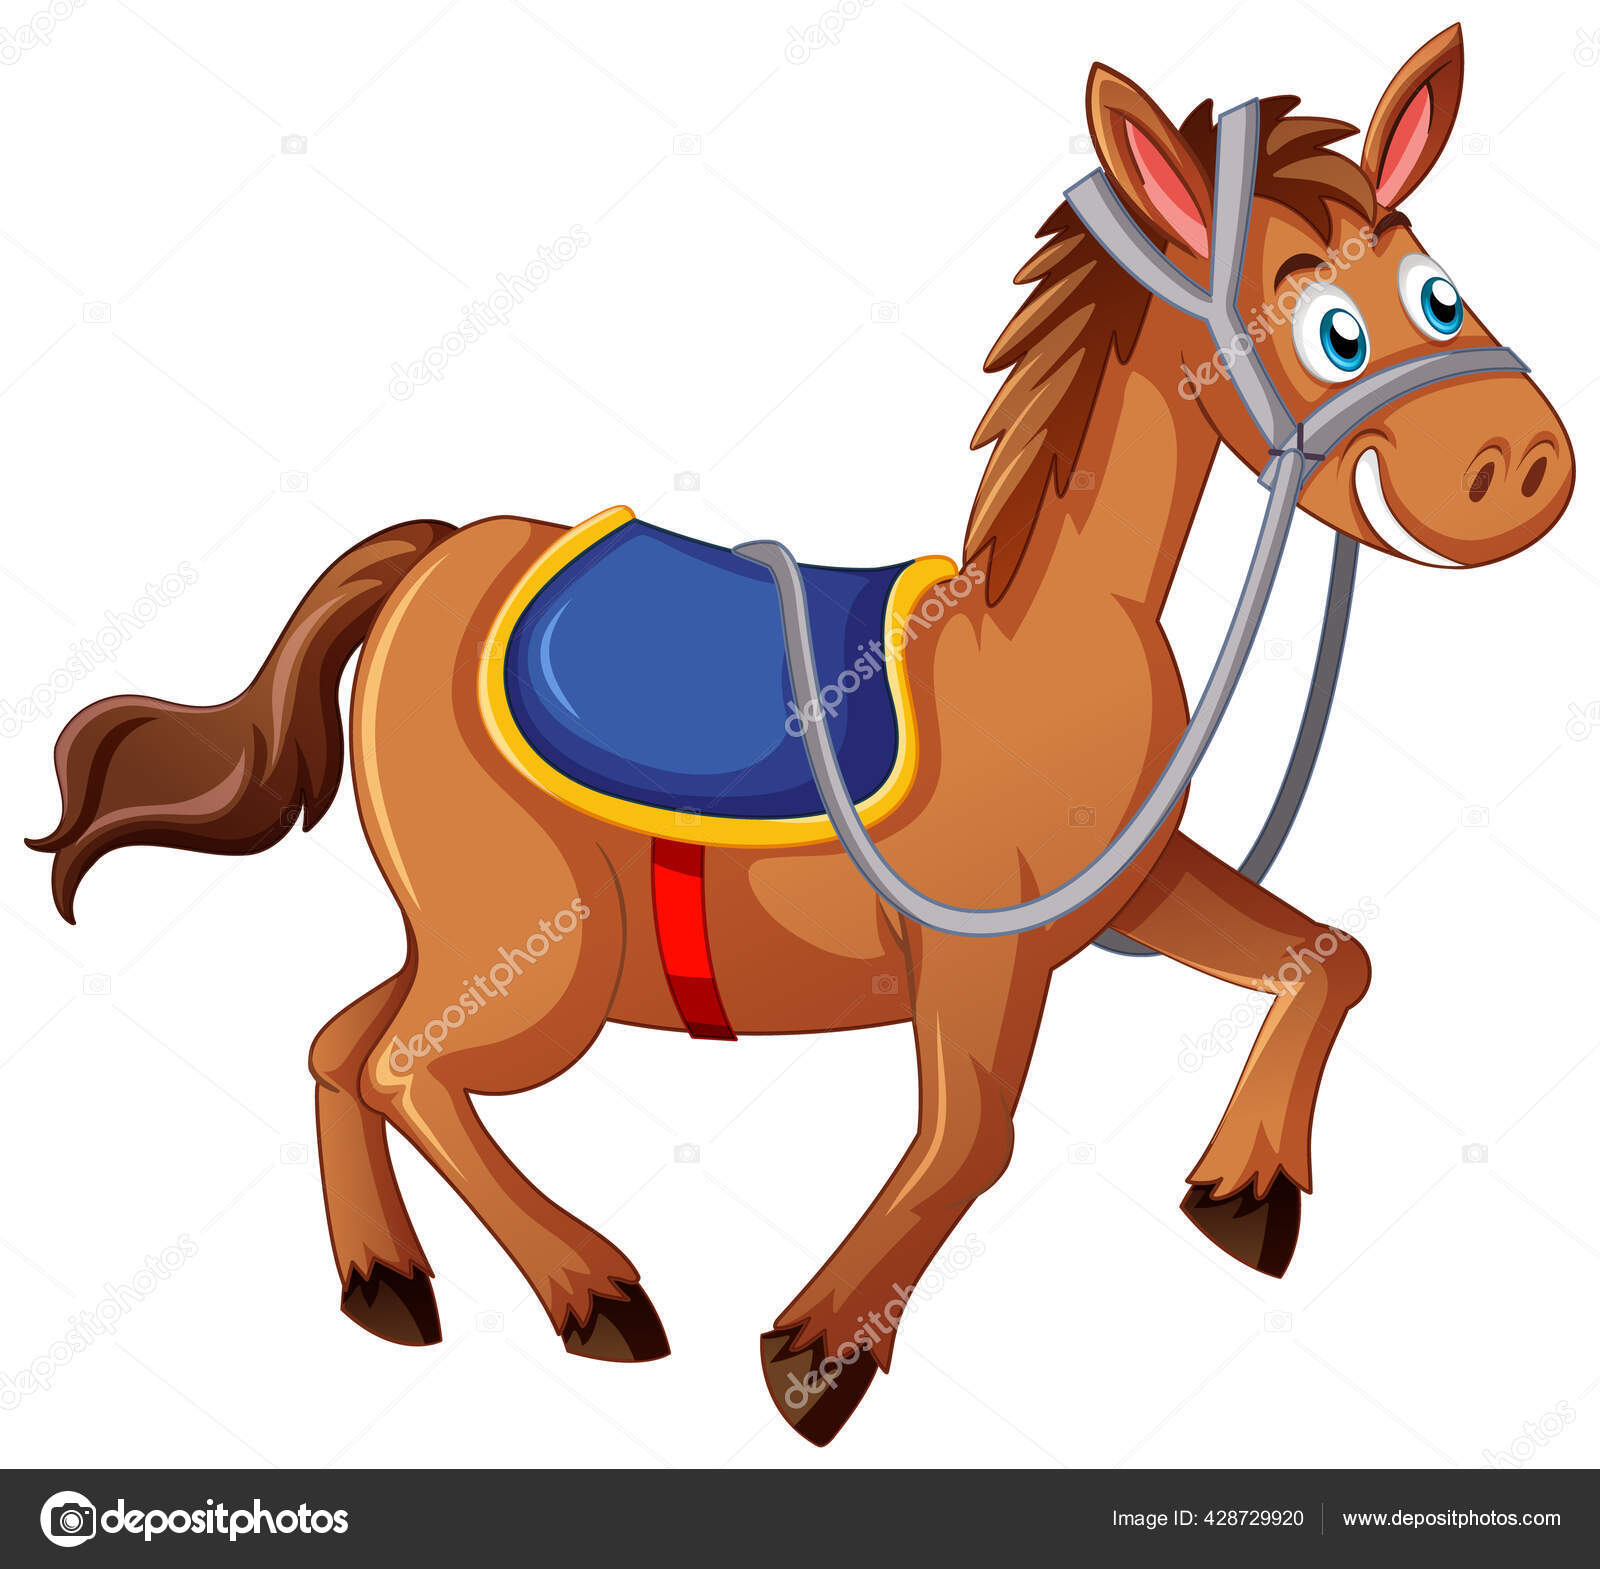 Cavalo bonito andando dos desenhos animados ilustração vetorial de